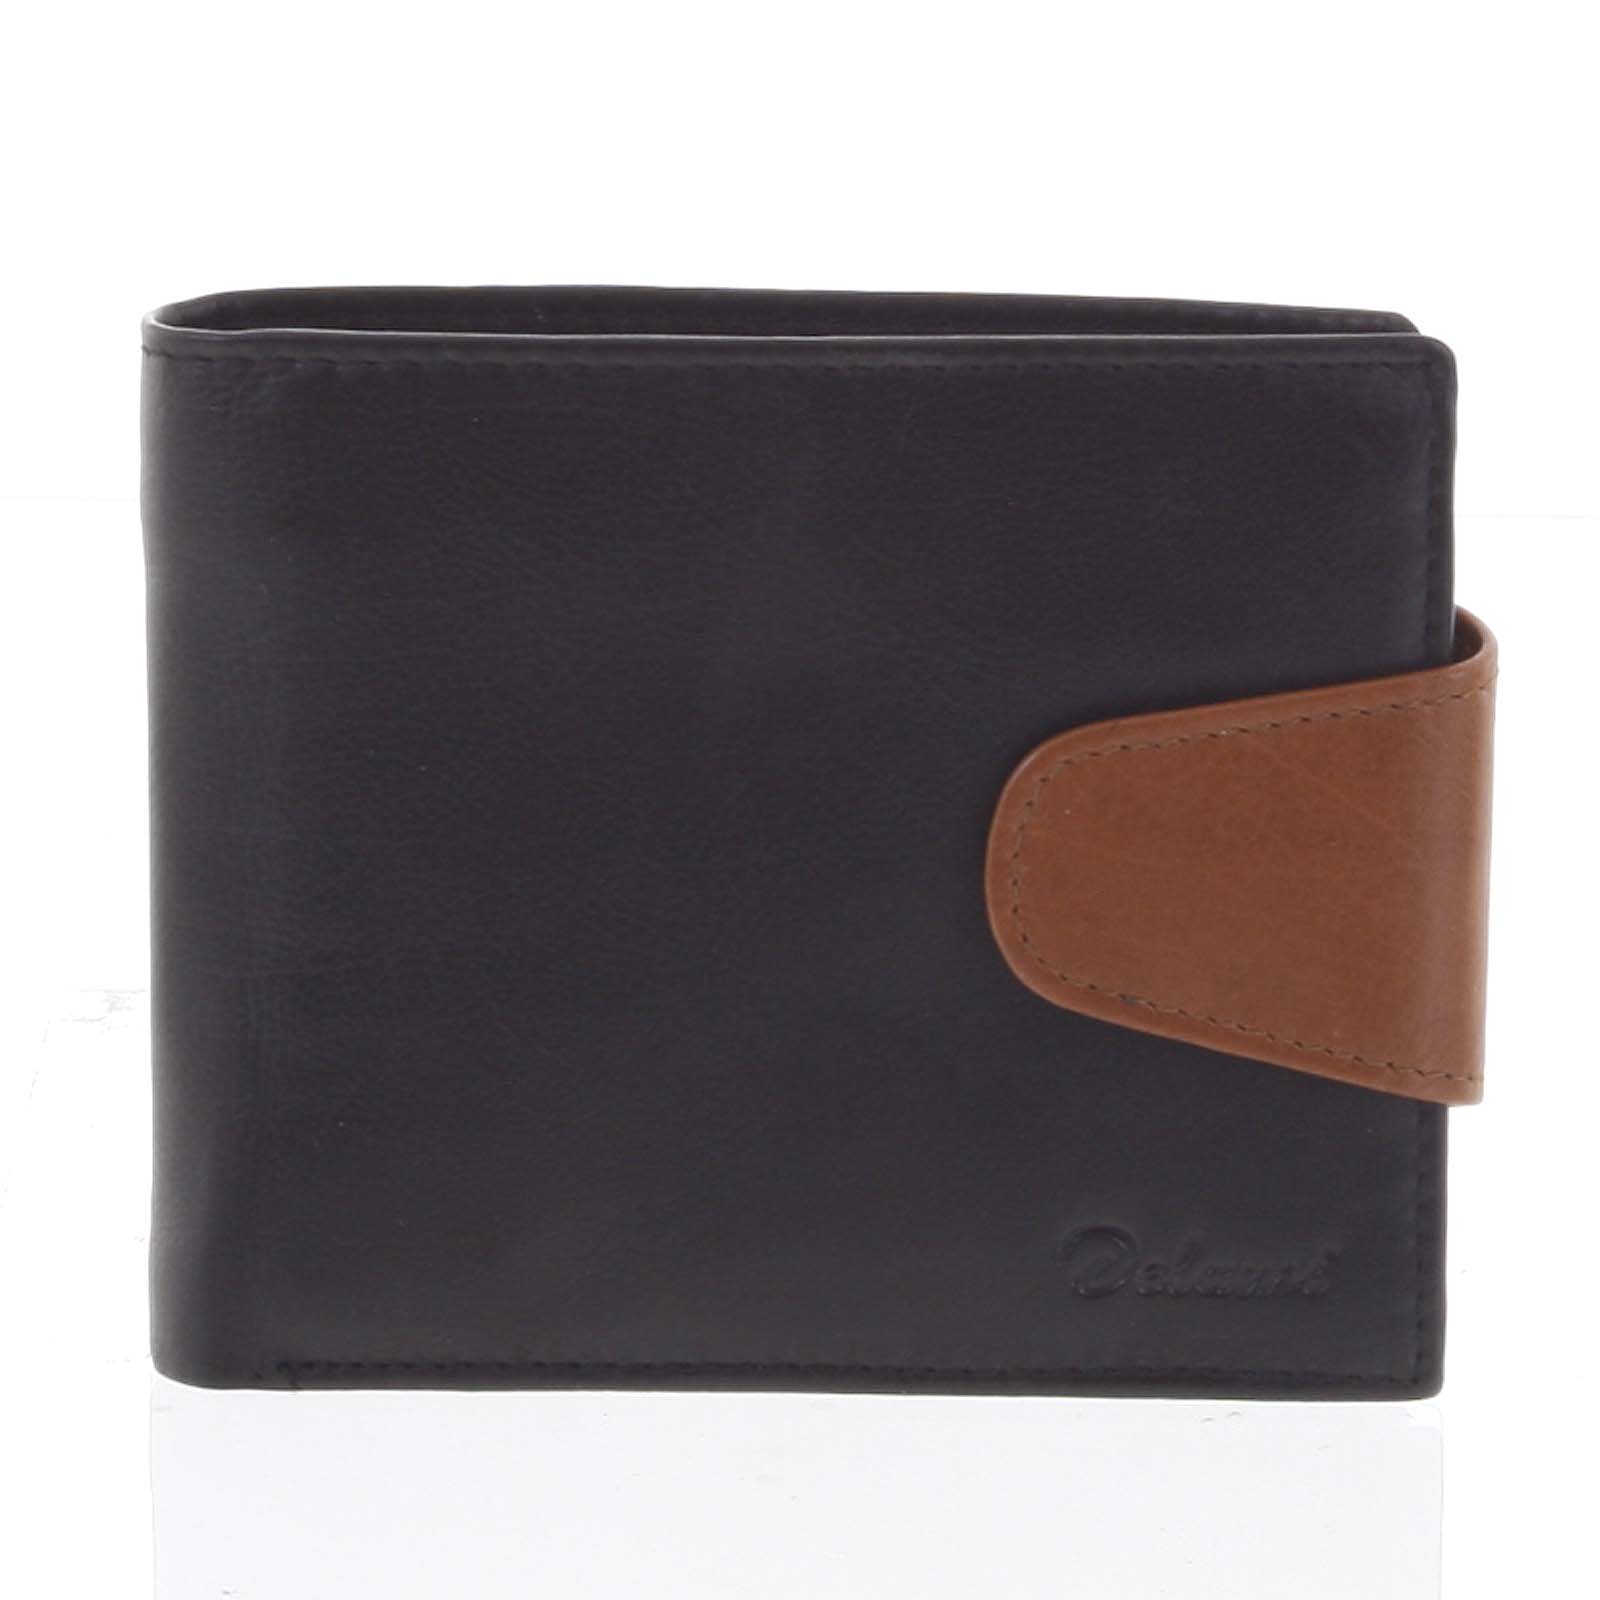 Pánská kožená peněženka černo hnědá - Delami 11816 černá